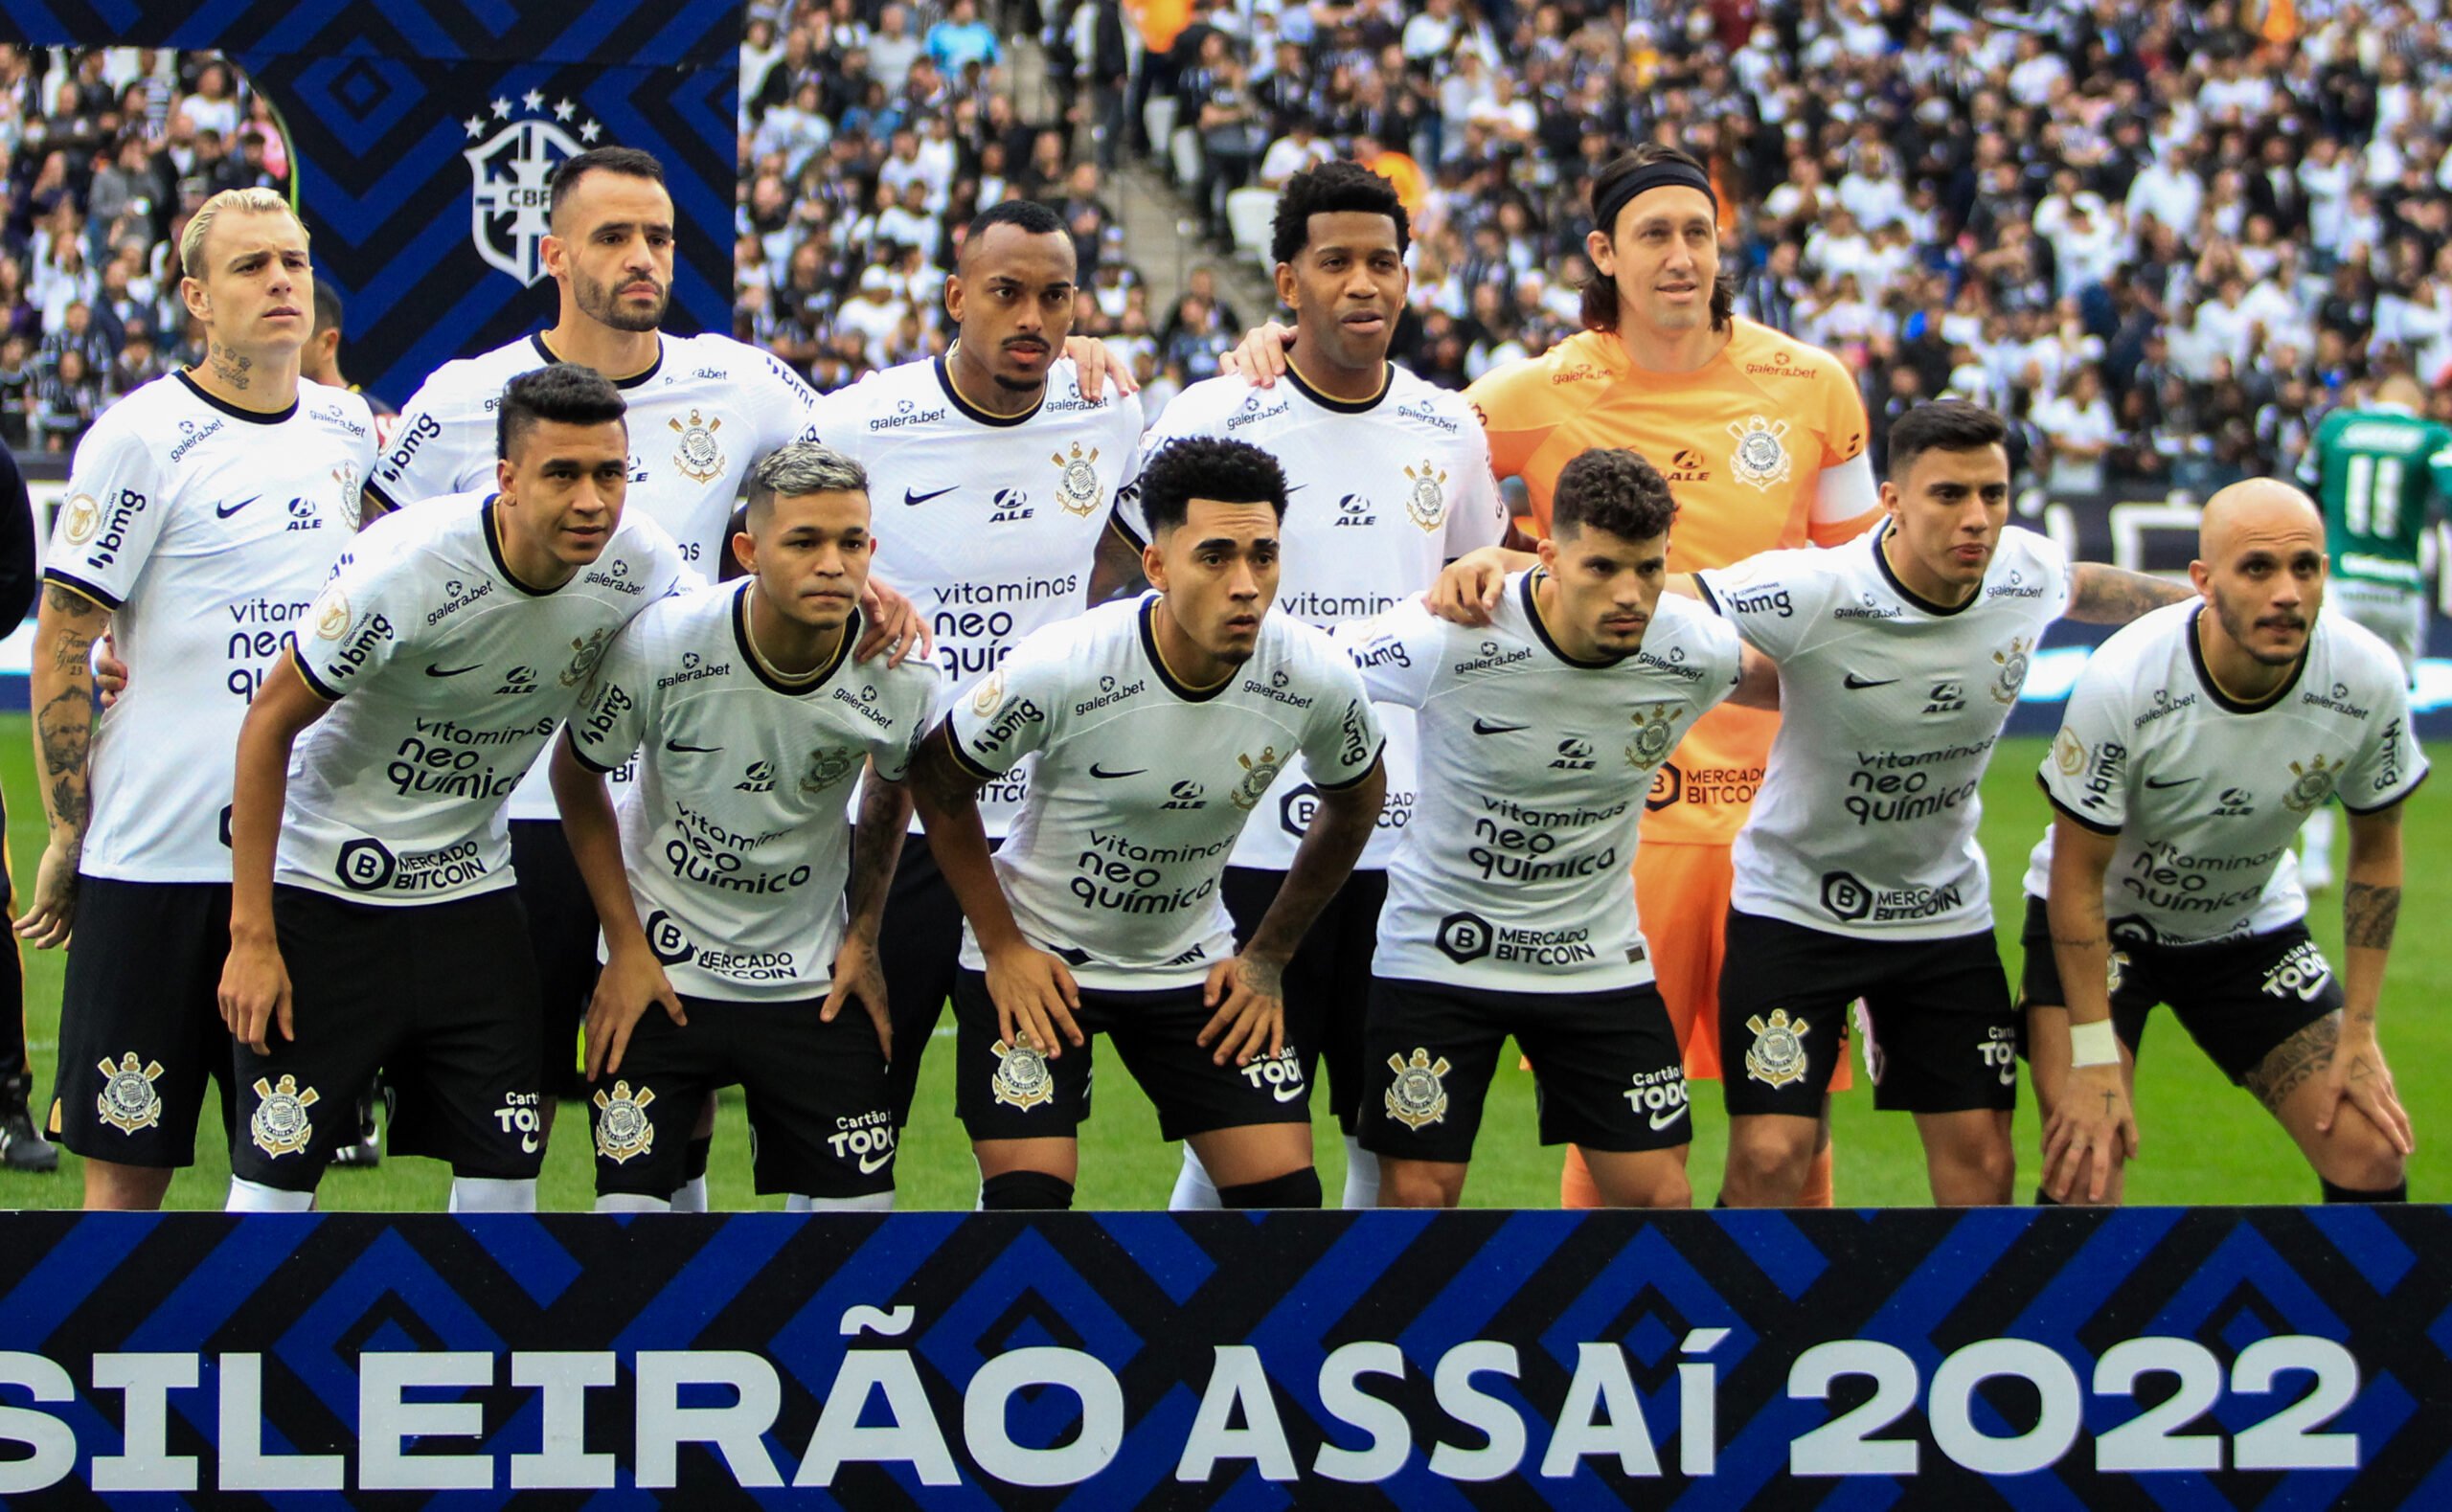 O Campeonato Paulista surgiu em 1902. Em pouco mais de 120 anos de história, apenas um time se destaca como o maior campeão do Paulistão.